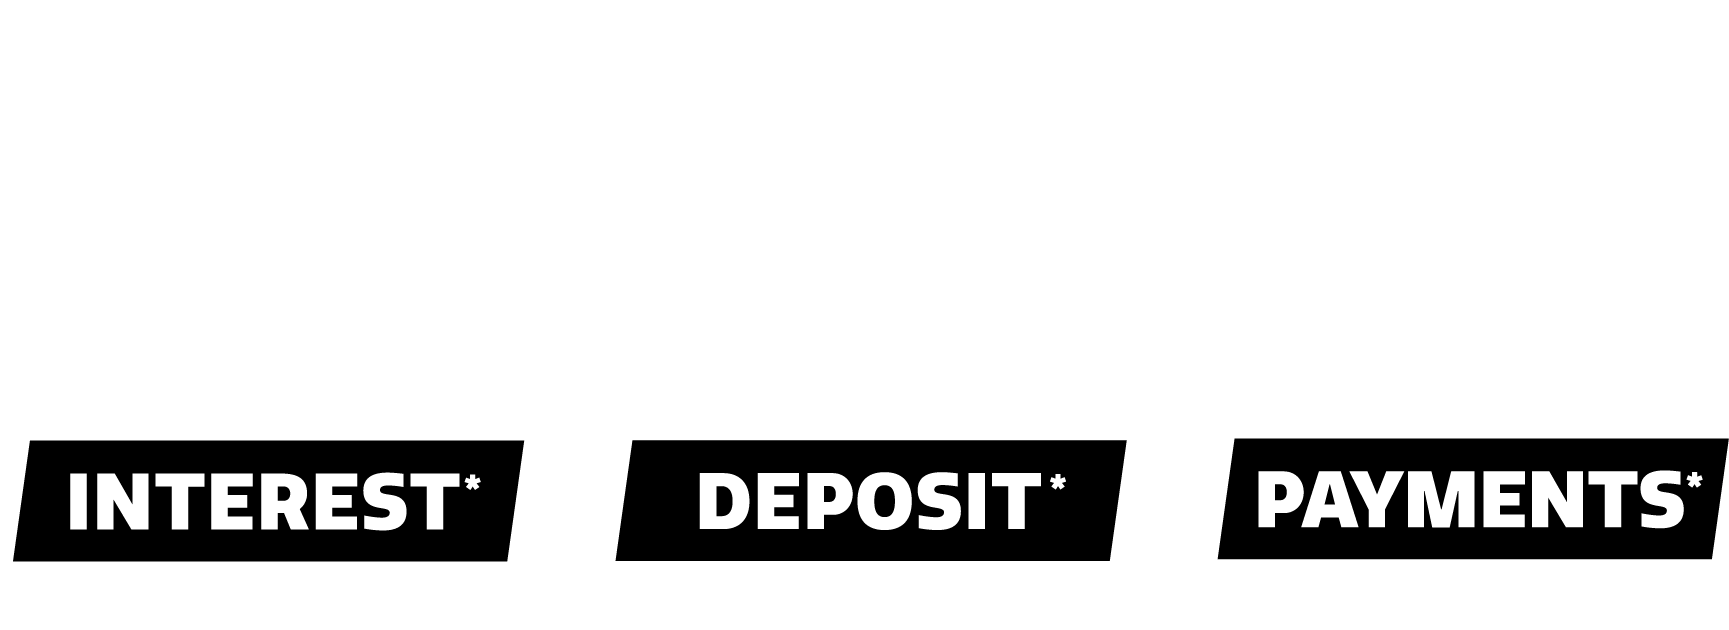 0 interest, 0 deposit 0 payments